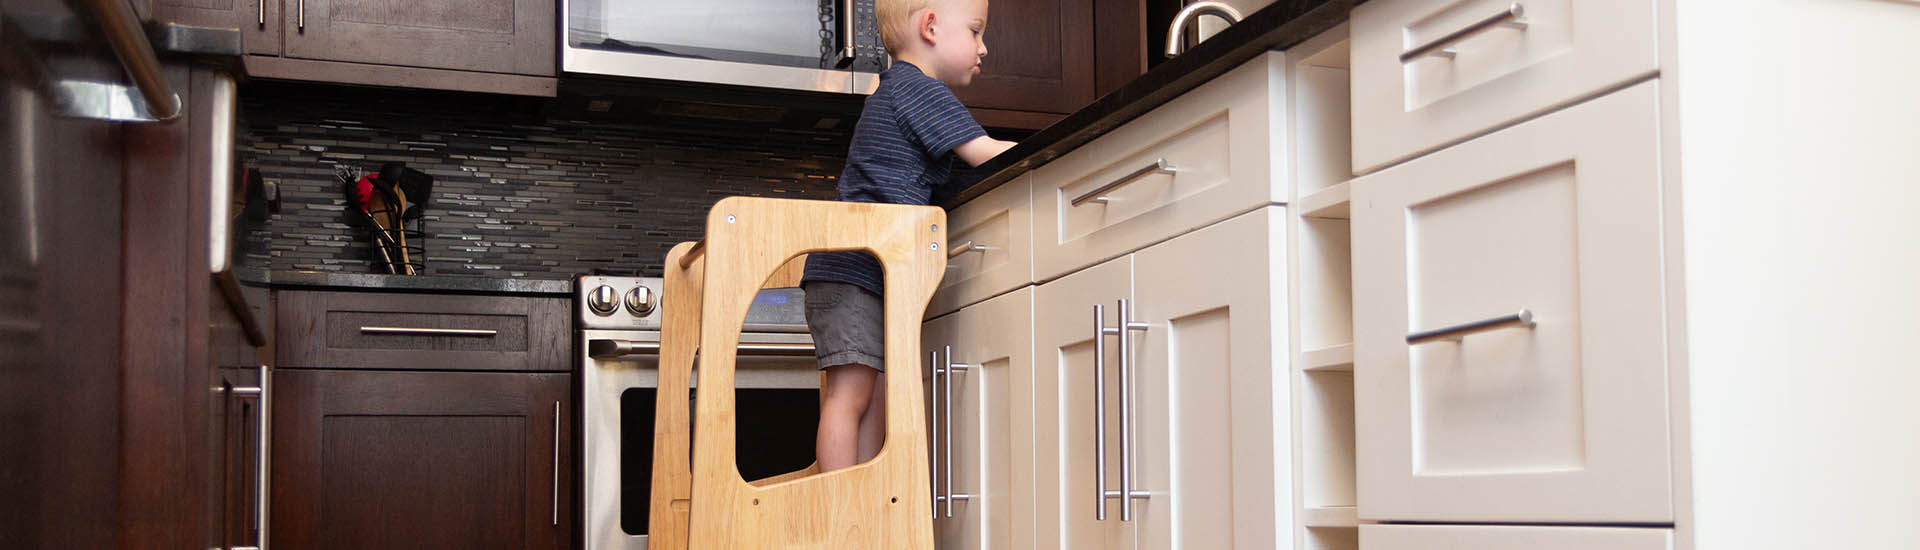 Boy standing on kids kitchen step stool helper